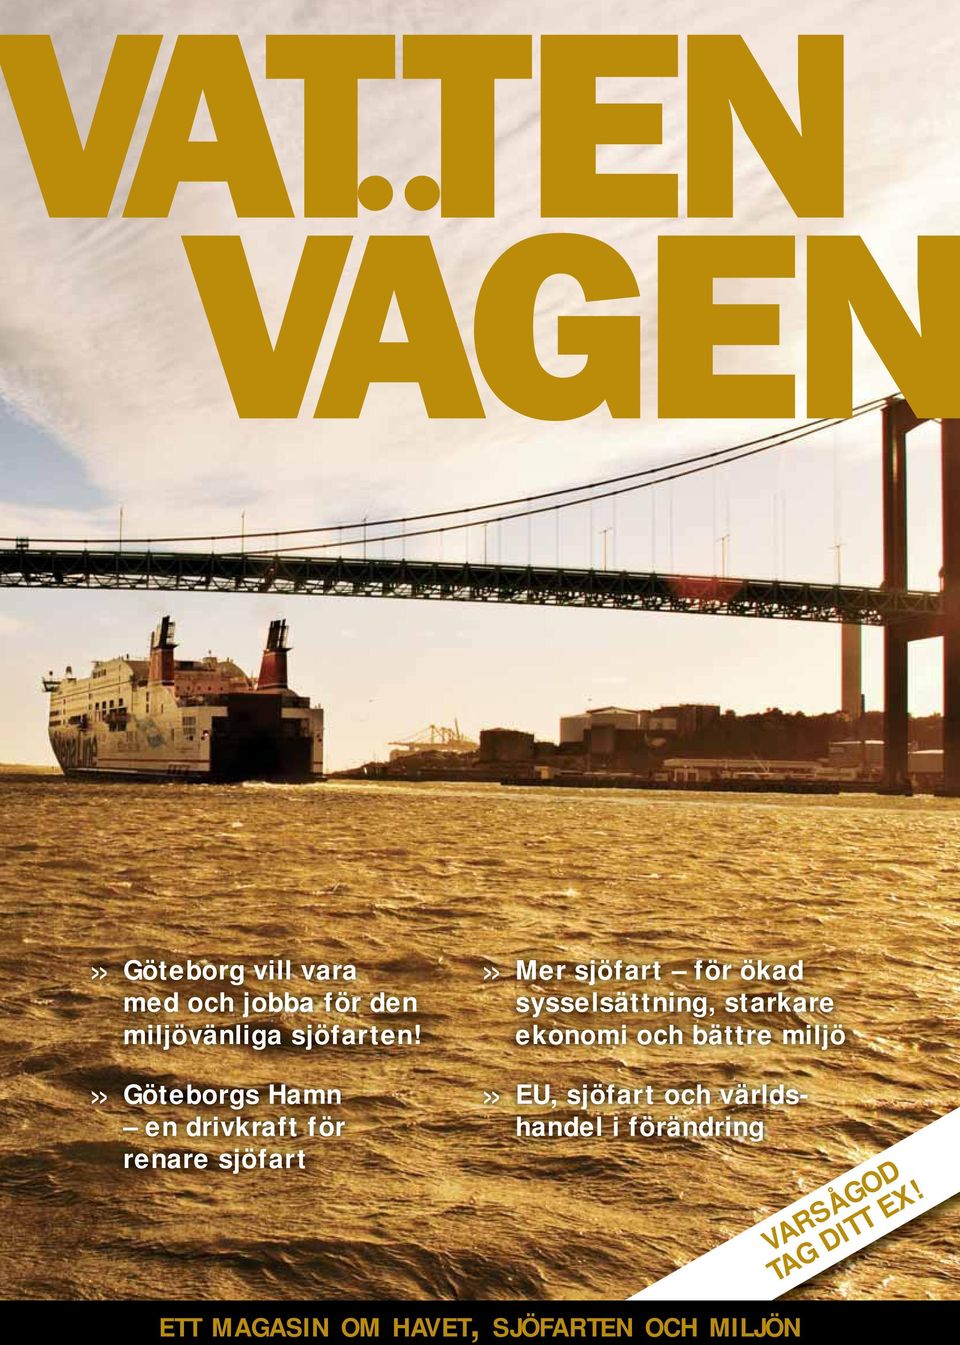 >> Göteborgs Hamn en drivkraft för renare sjöfart >> EU, sjöfart och